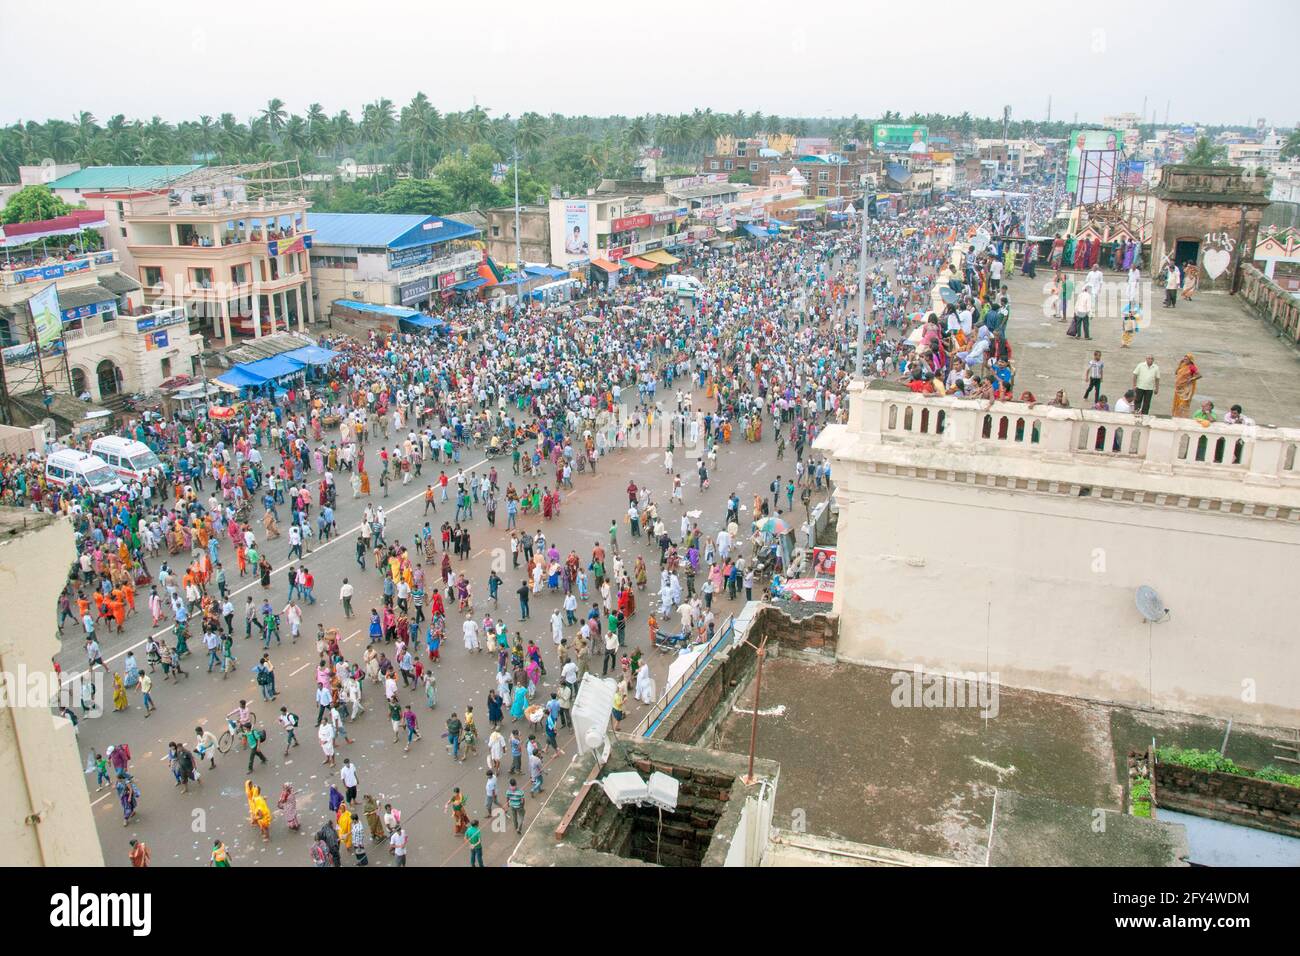 La imagen muestra una vista aérea de Grand Road en la ciudad de Puri. La foto fue tomada durante la procesión de ratha yatra. Foto de stock